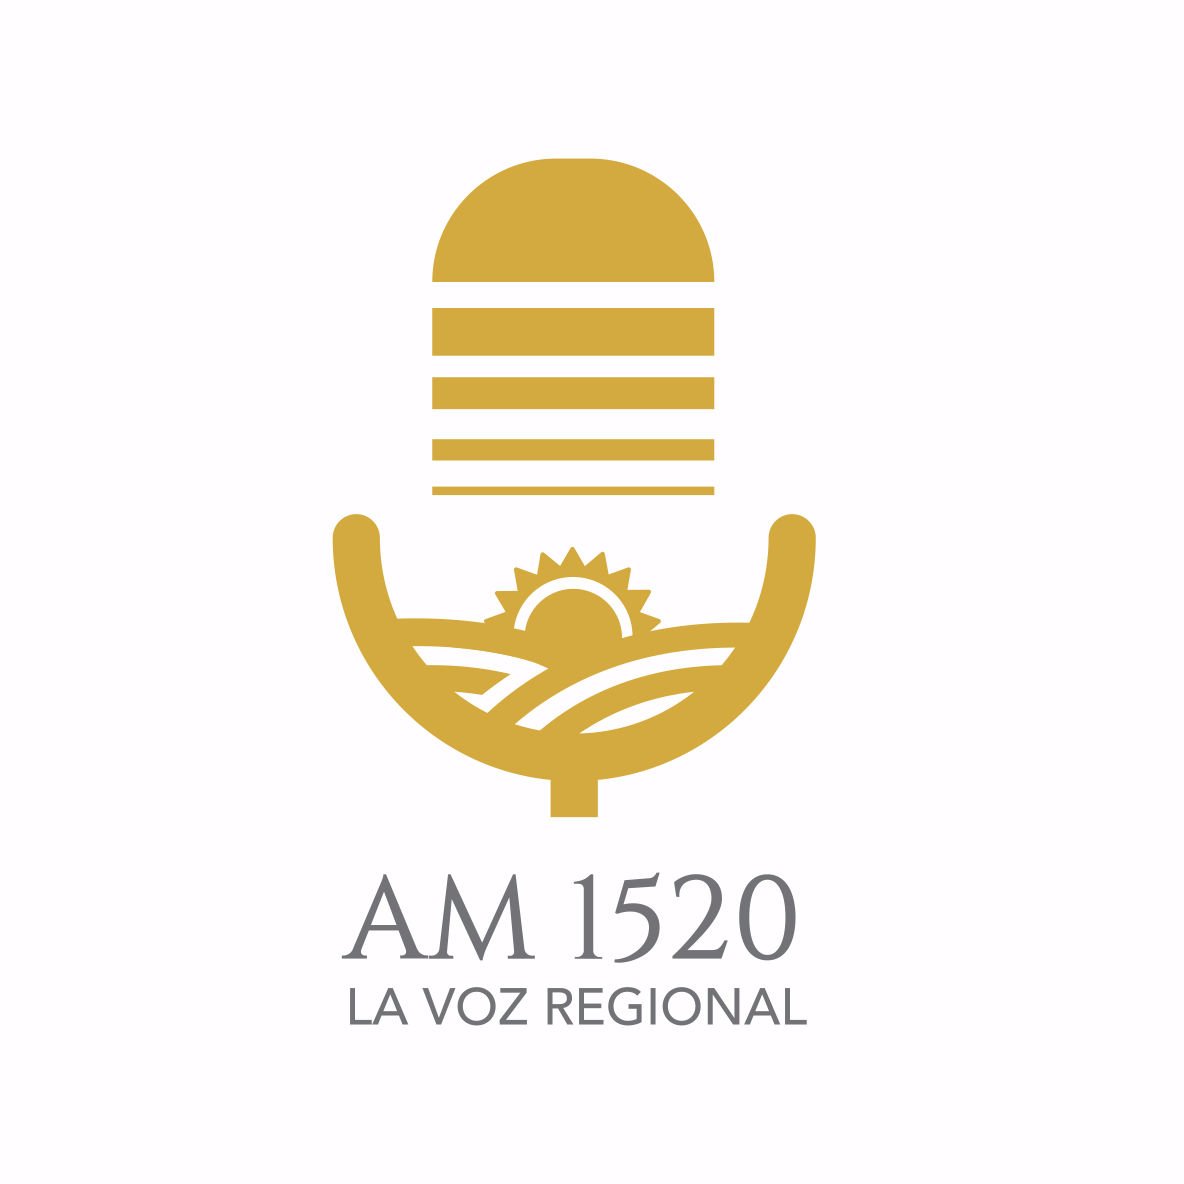 Somos LA VOZ REGIONAL. La Radio de la Provincia de Buenos Aires. Líderes en audiencia desde 1988. WhatsApp: 2241-60-3600. E-mail: radiochascomusam1520@gmail.com